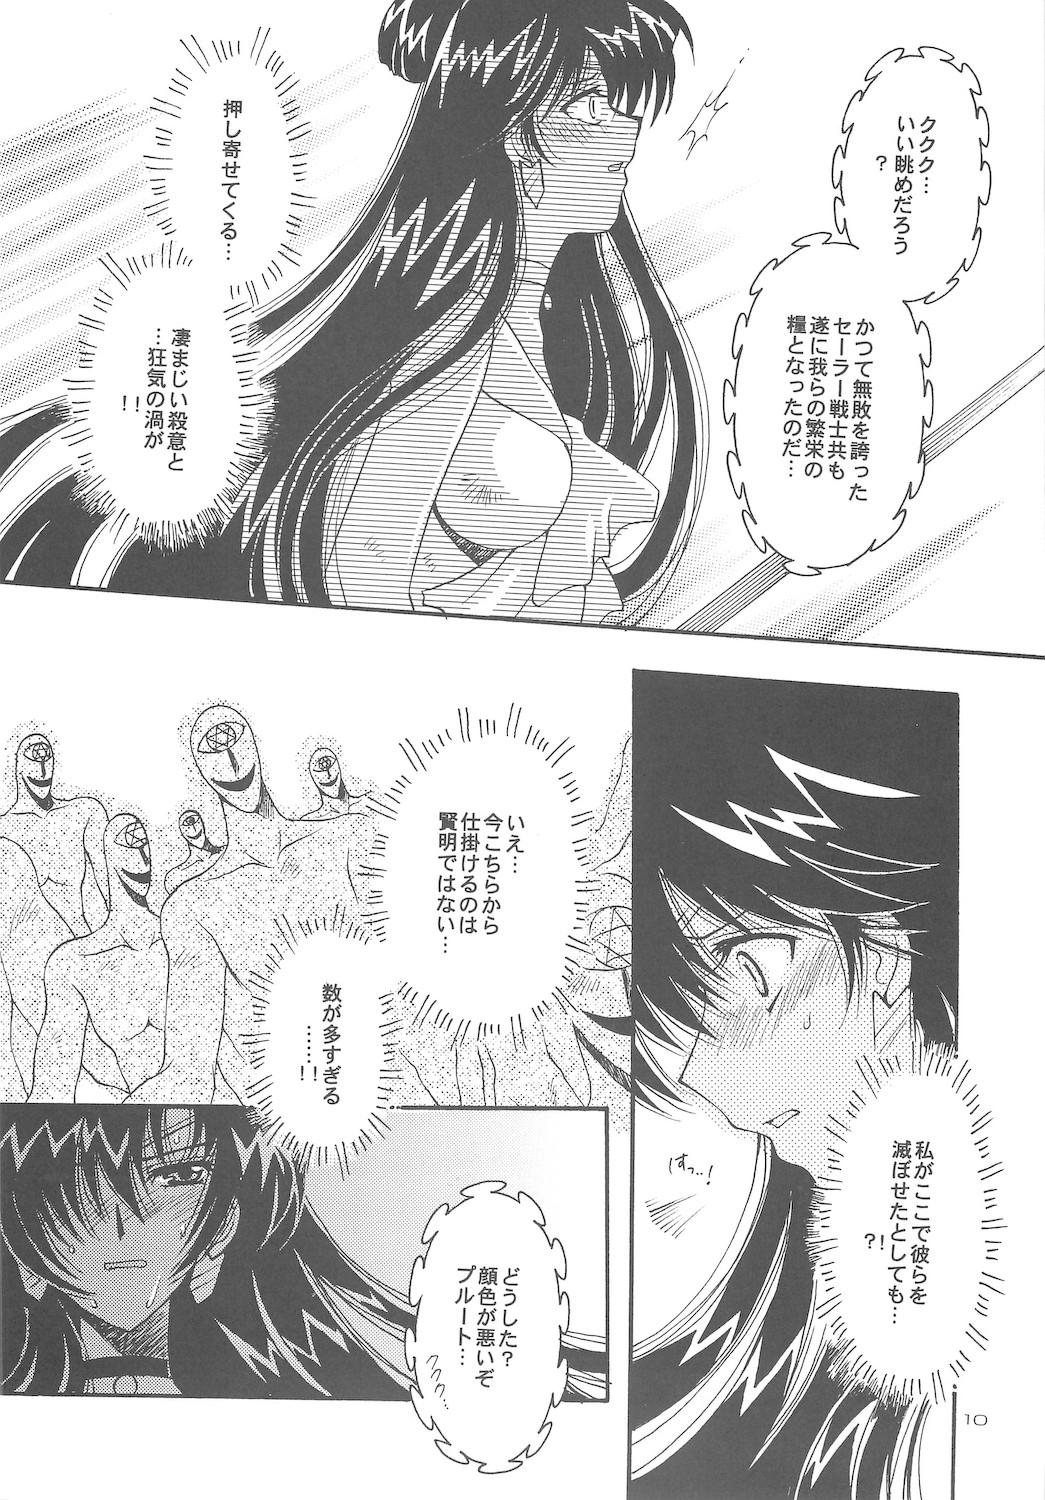 Retro Owaru Sekai dai 4 shou - Sailor moon Publico - Page 10